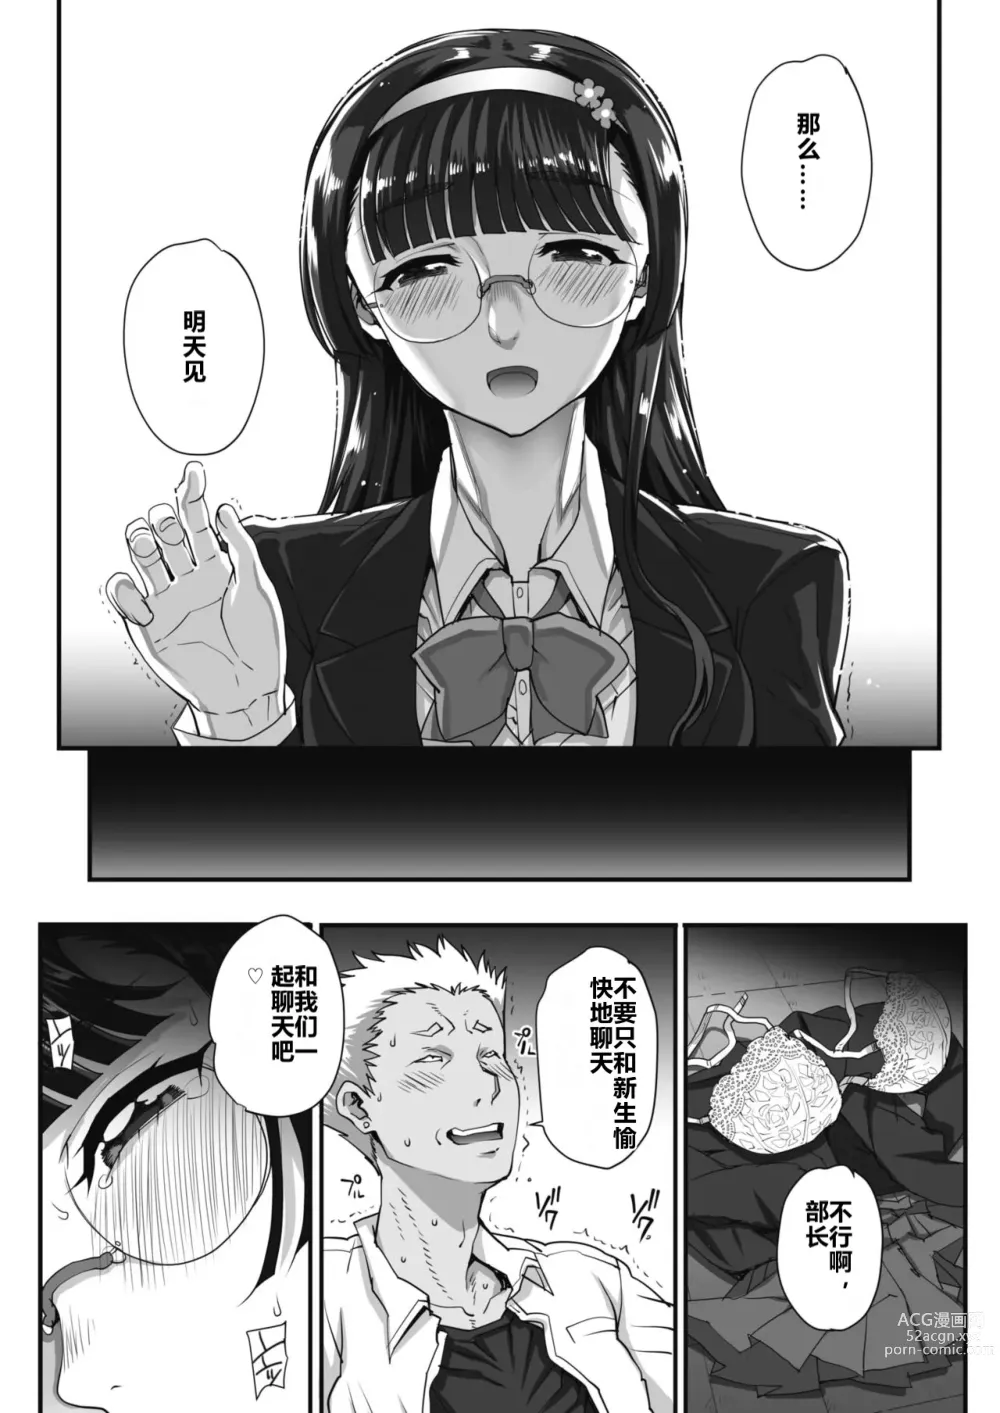 Page 5 of manga 贪恋文学的人们